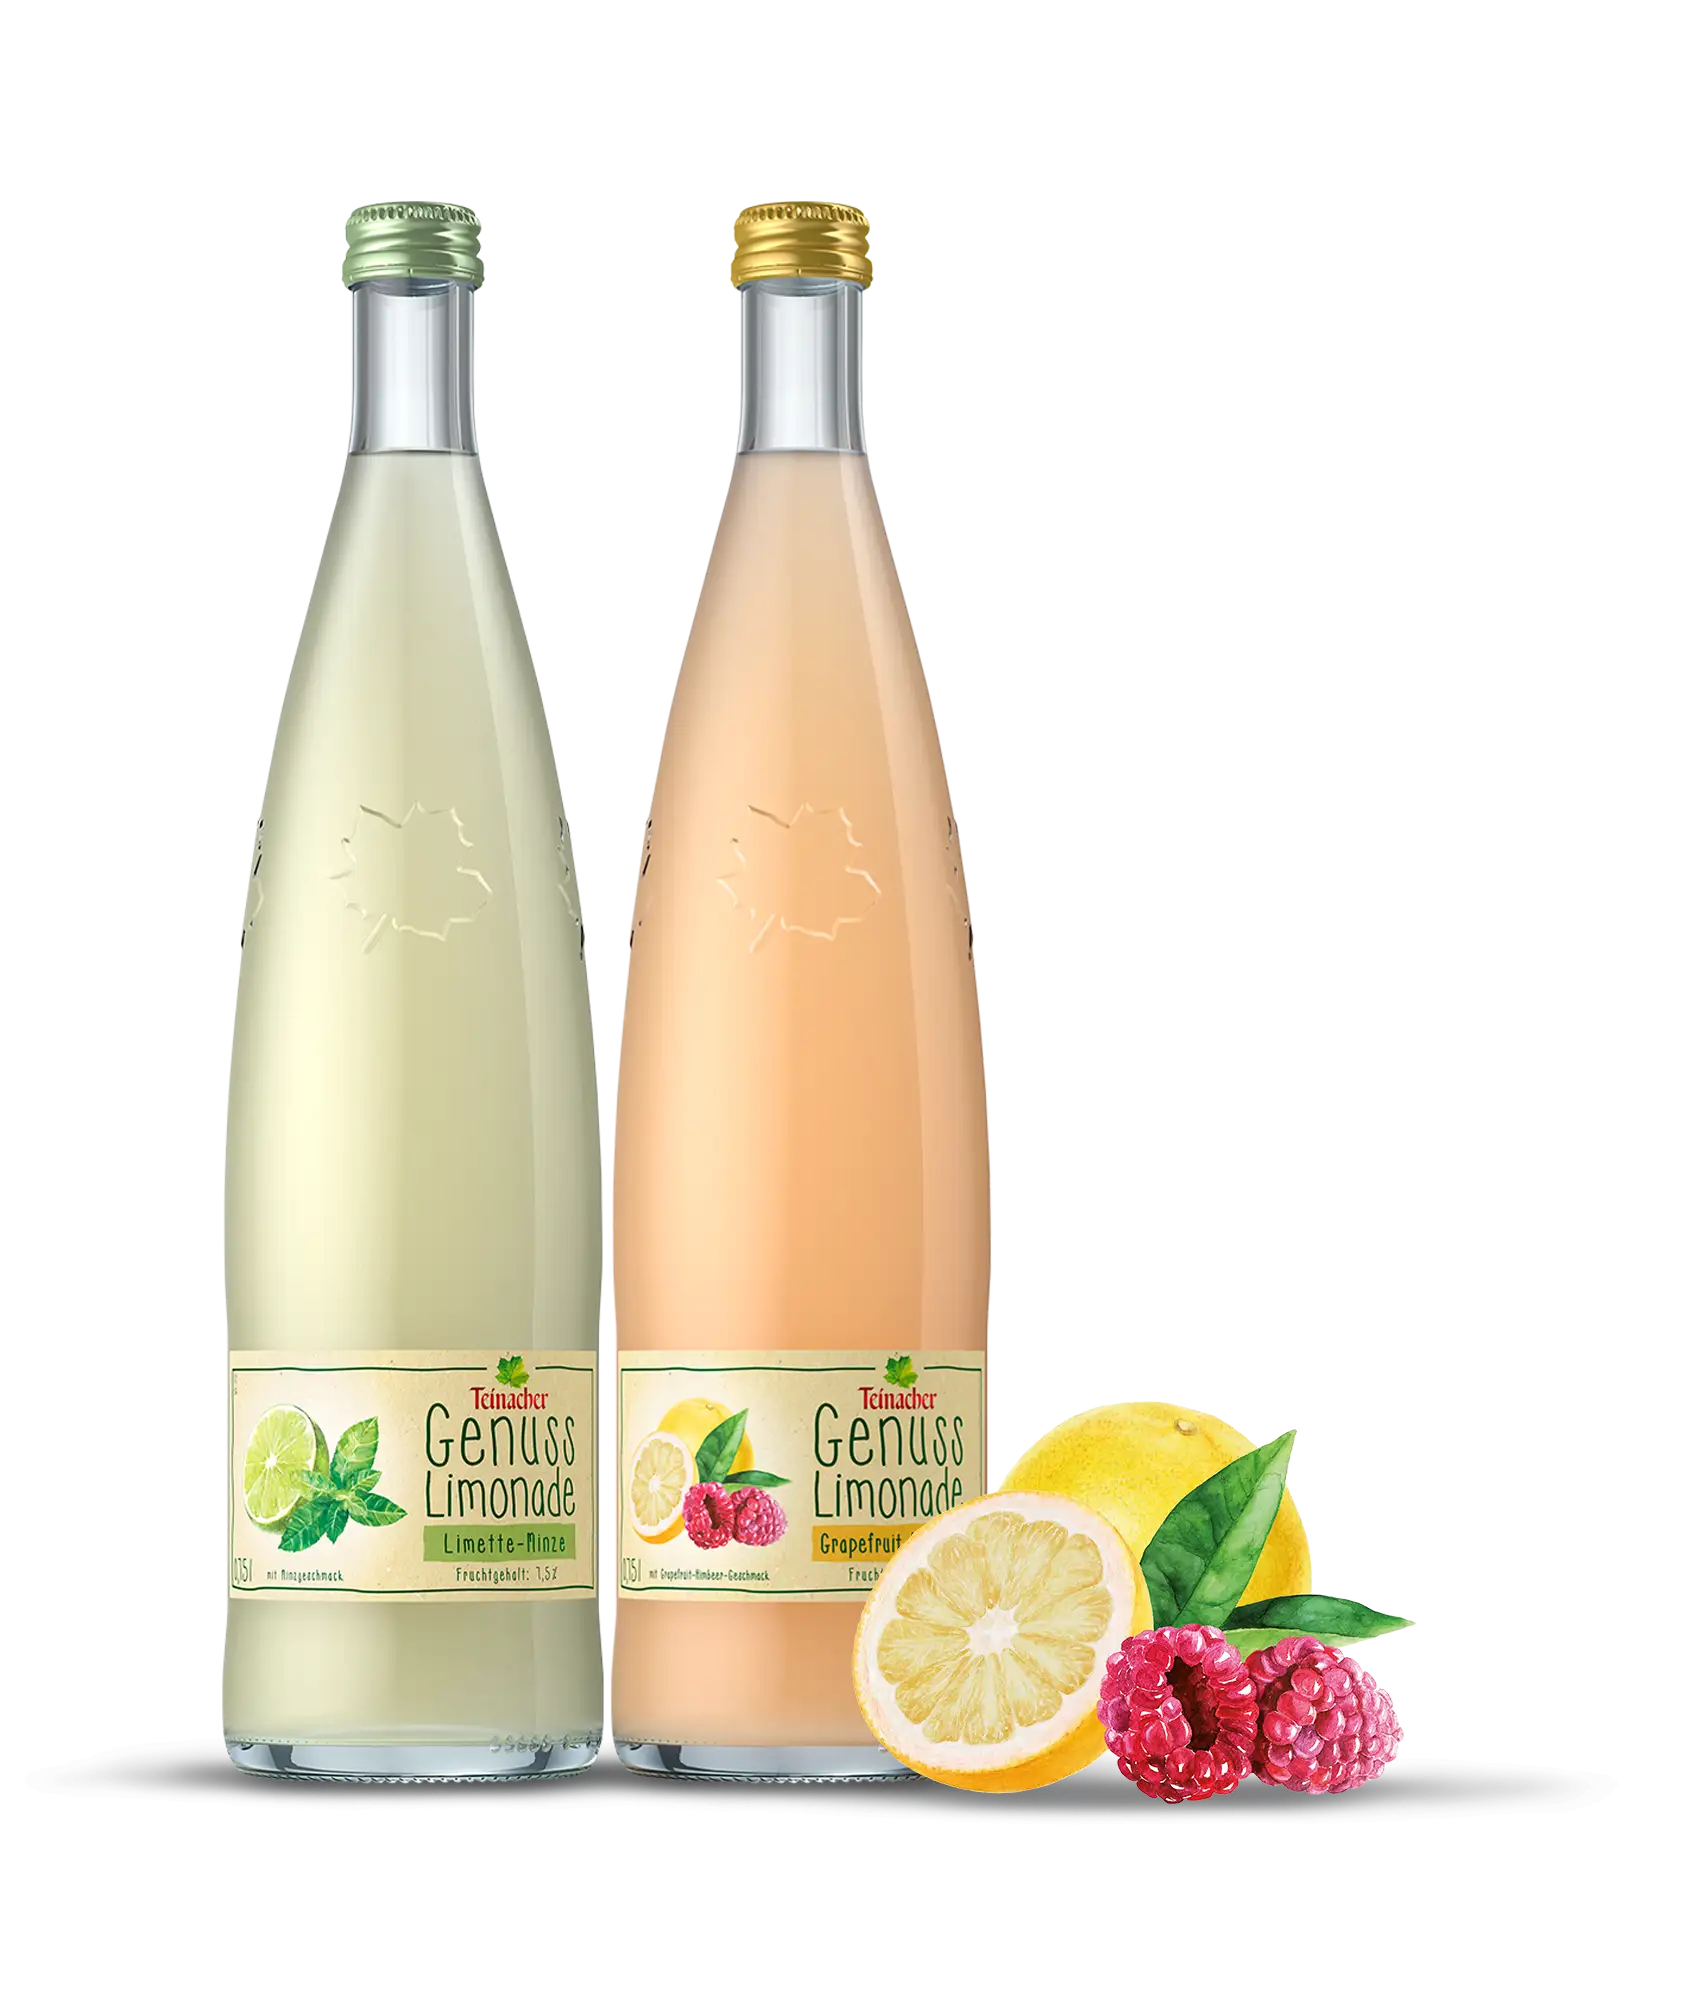 Teinacher Genuss-Limonaden Limette-Minze und Grapefruit-Himbeere in der 0,75 L Glas Genussflasche mit einer Frucht